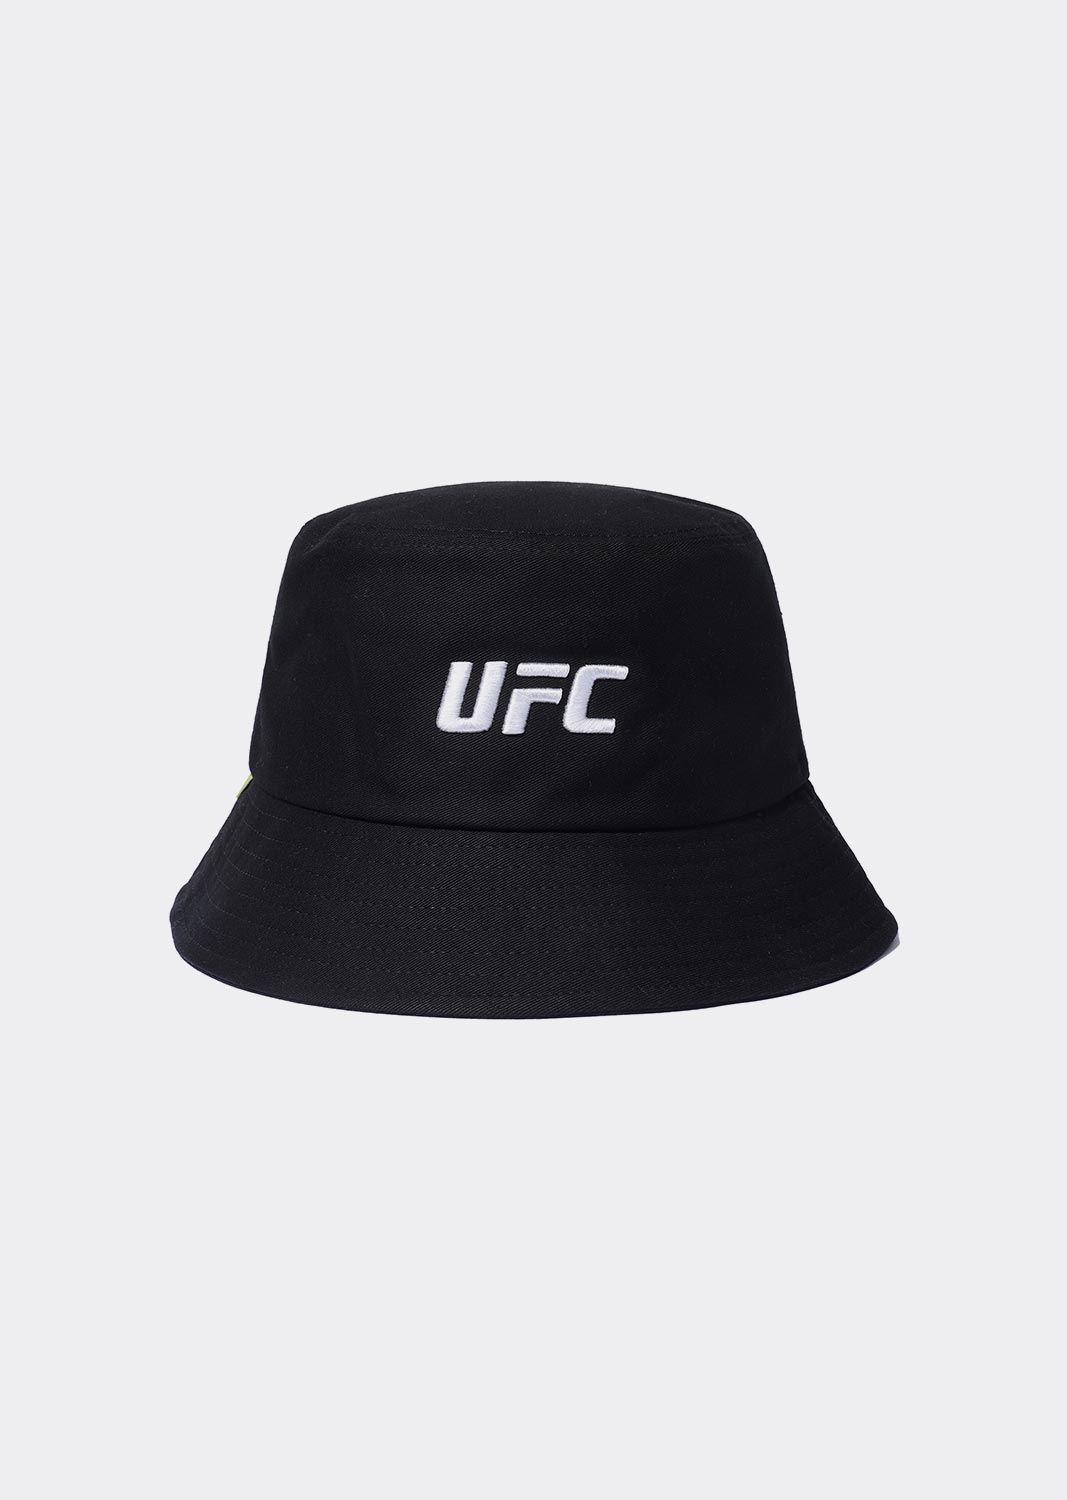 UFC 에센셜+ 버킷햇 블랙 U2HWU1341BK